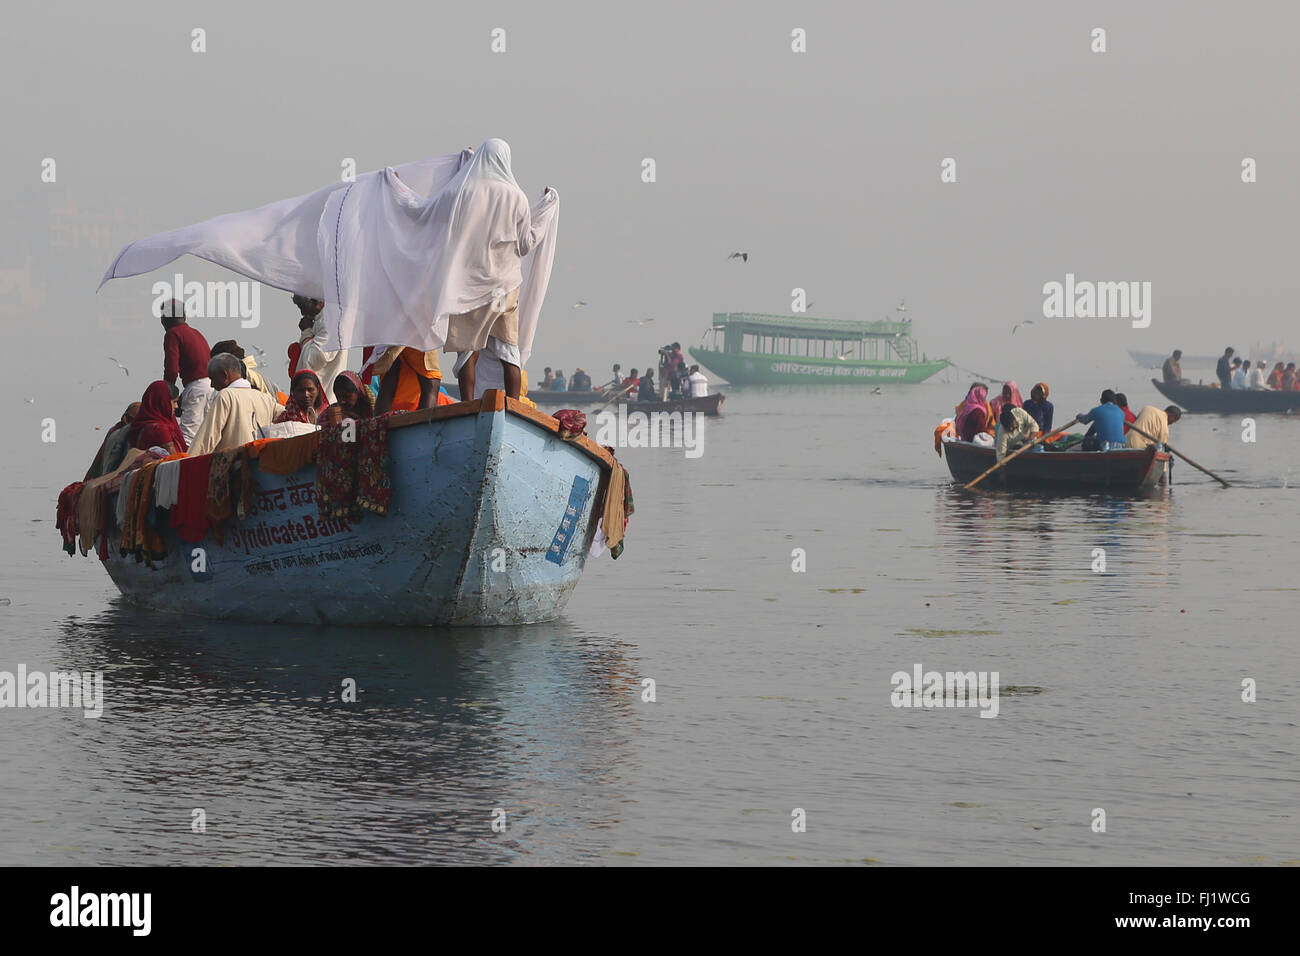 Pèlerins hindous sur un bateau sur le Gange, ville sainte de Varanasi, Inde Banque D'Images